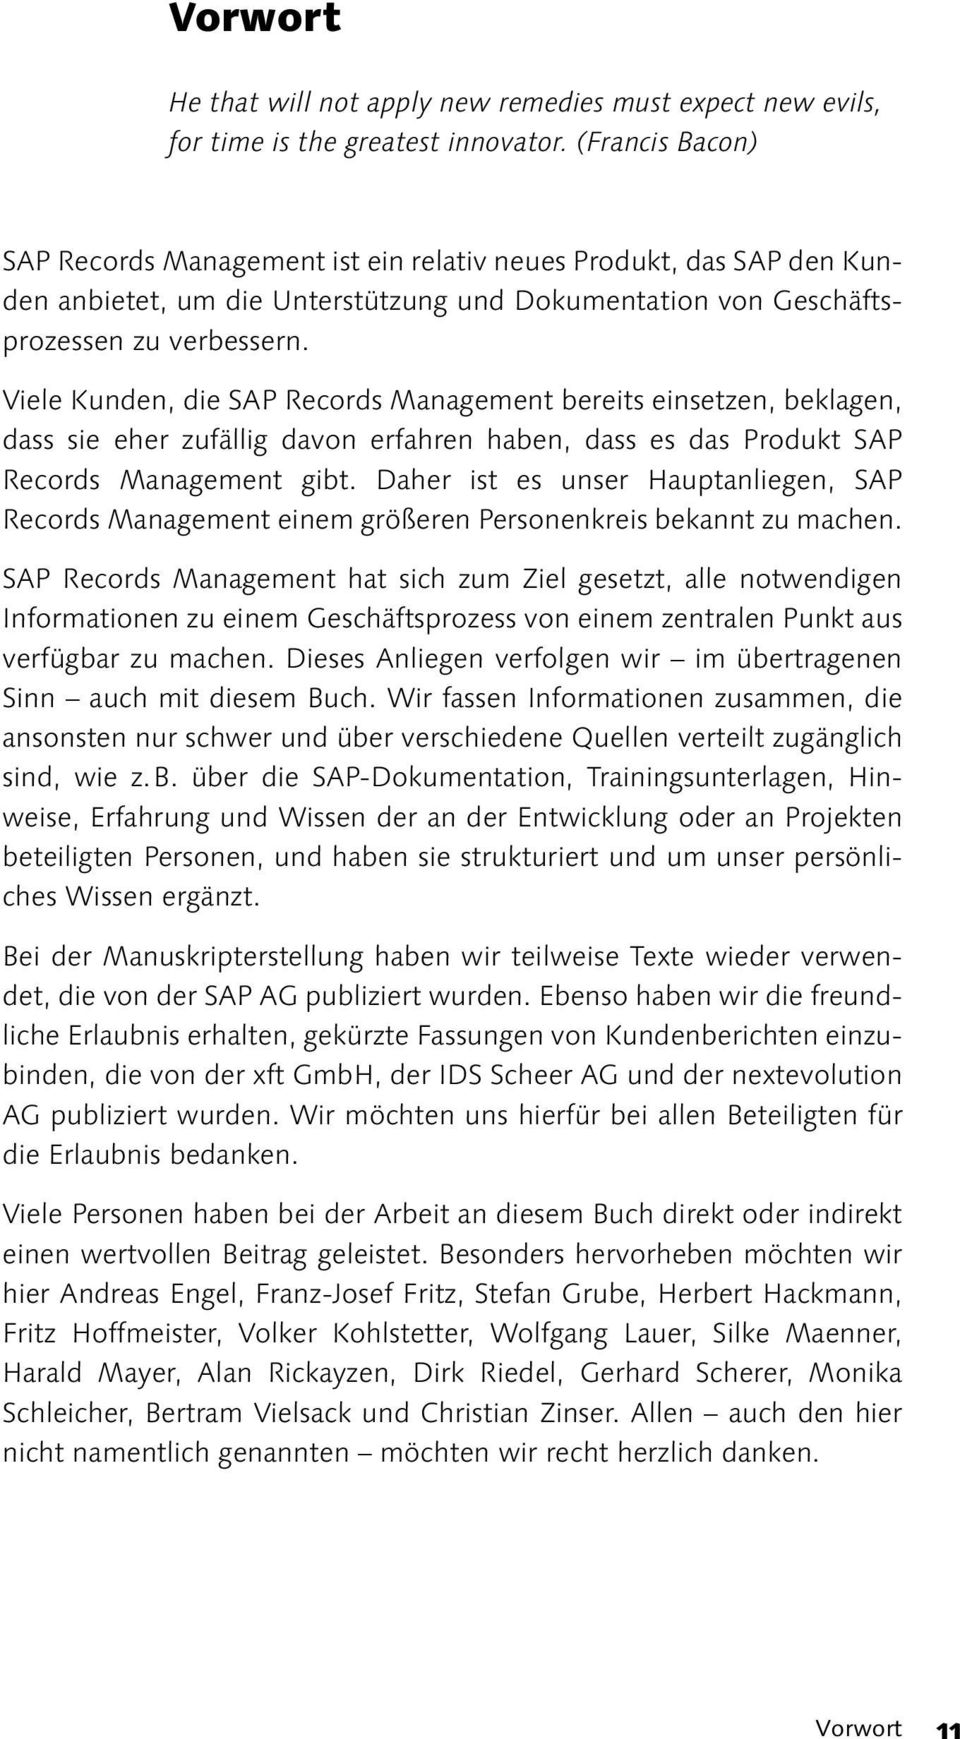 Viele Kunden, die SAP Records Management bereits einsetzen, beklagen, dass sie eher zufällig davon erfahren haben, dass es das Produkt SAP Records Management gibt.